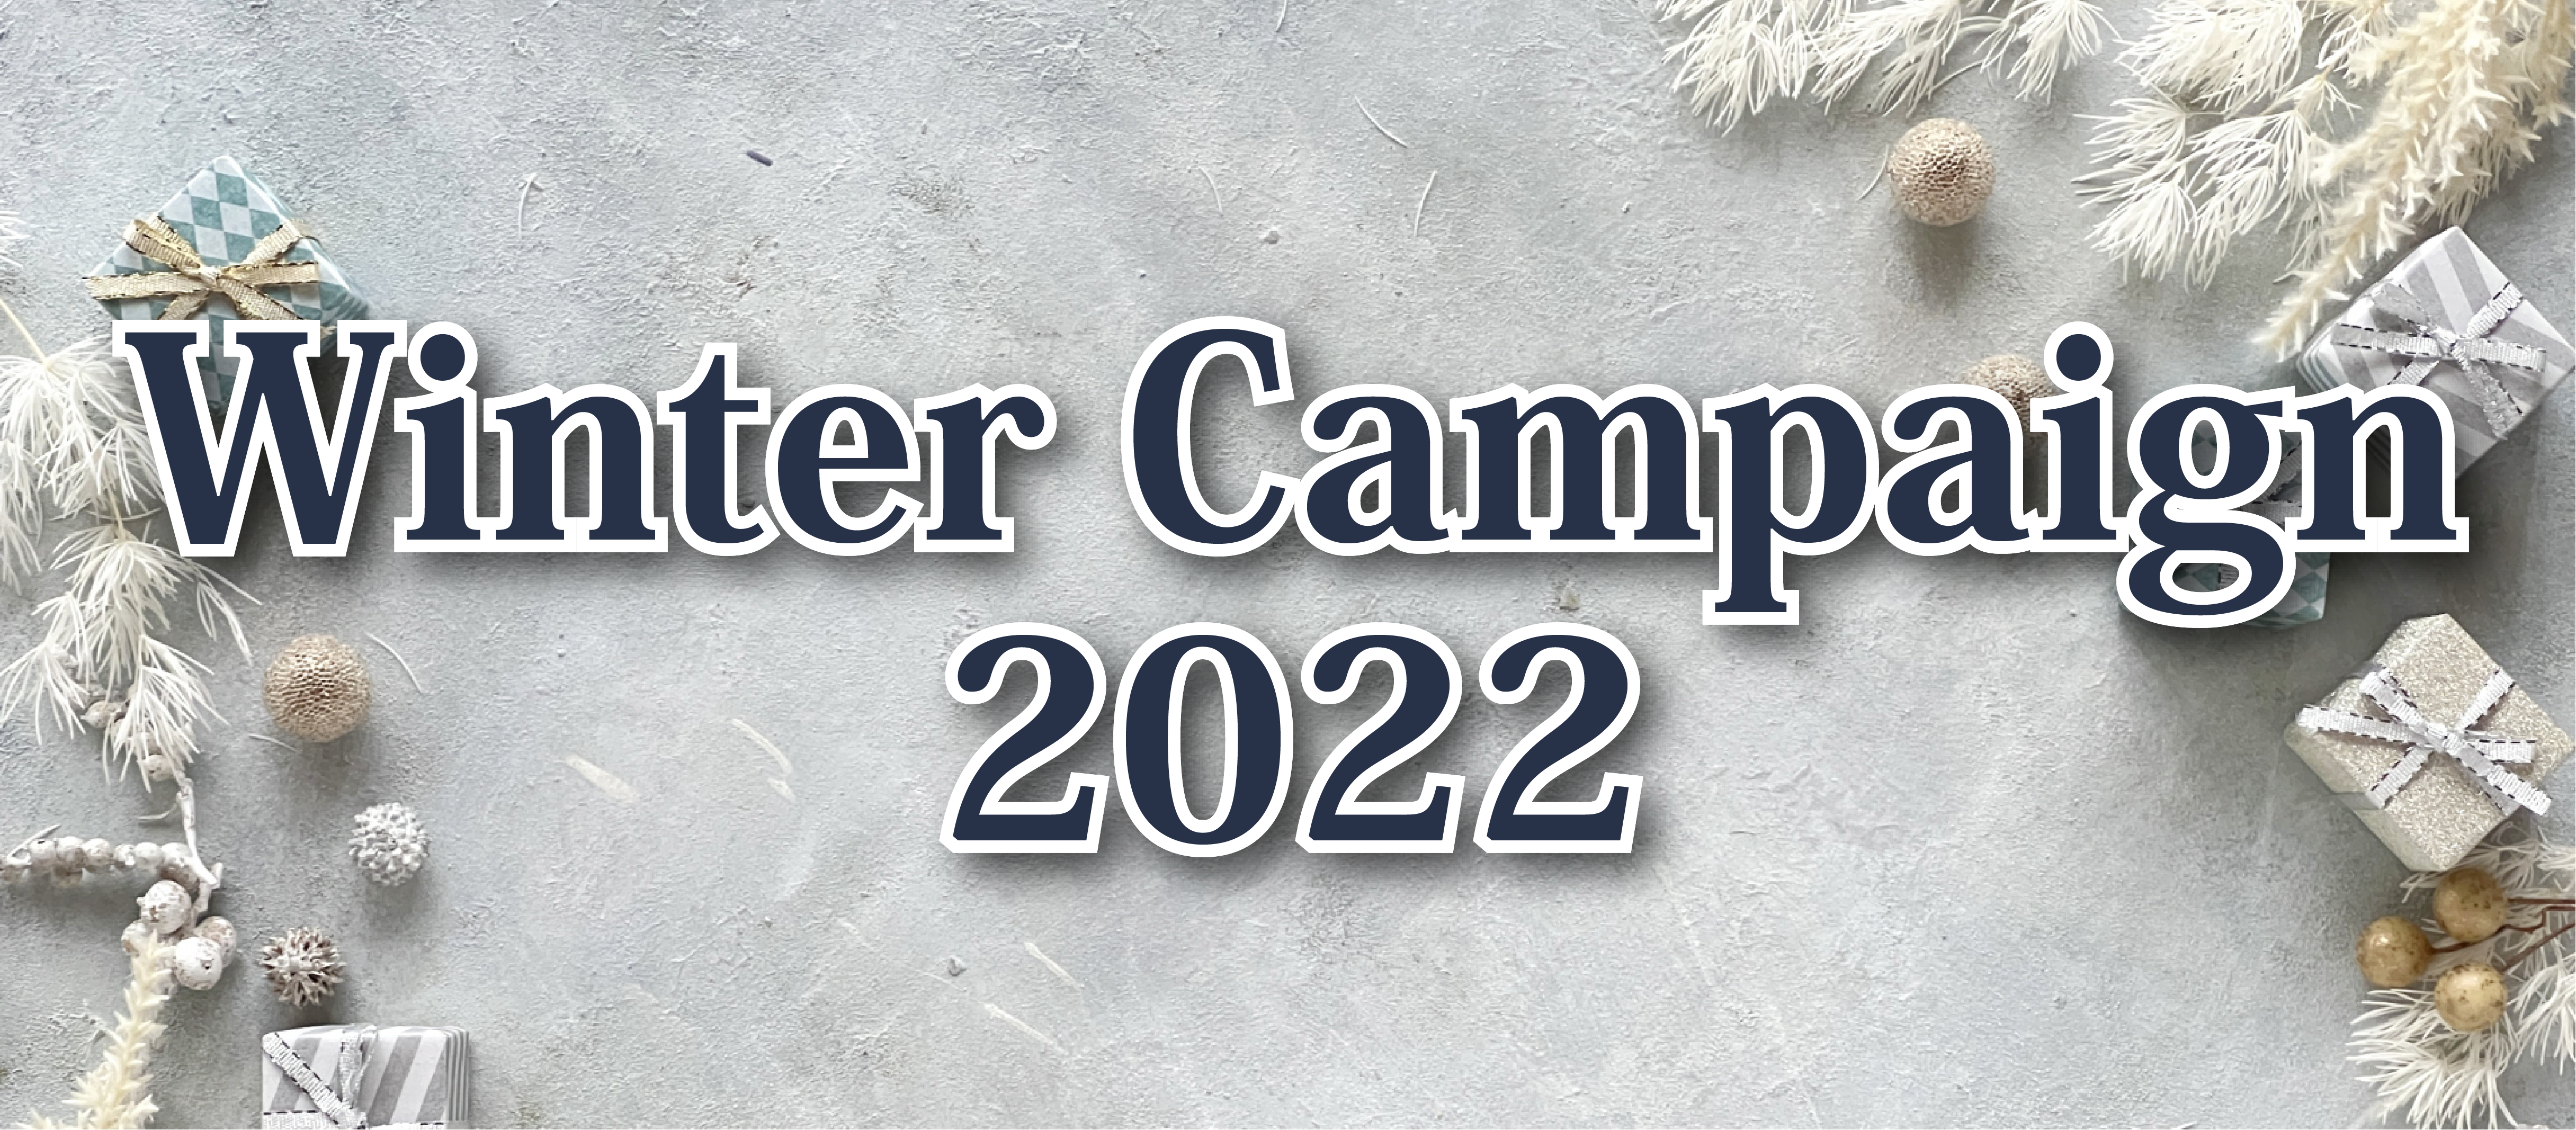 2022 Winter Campaign